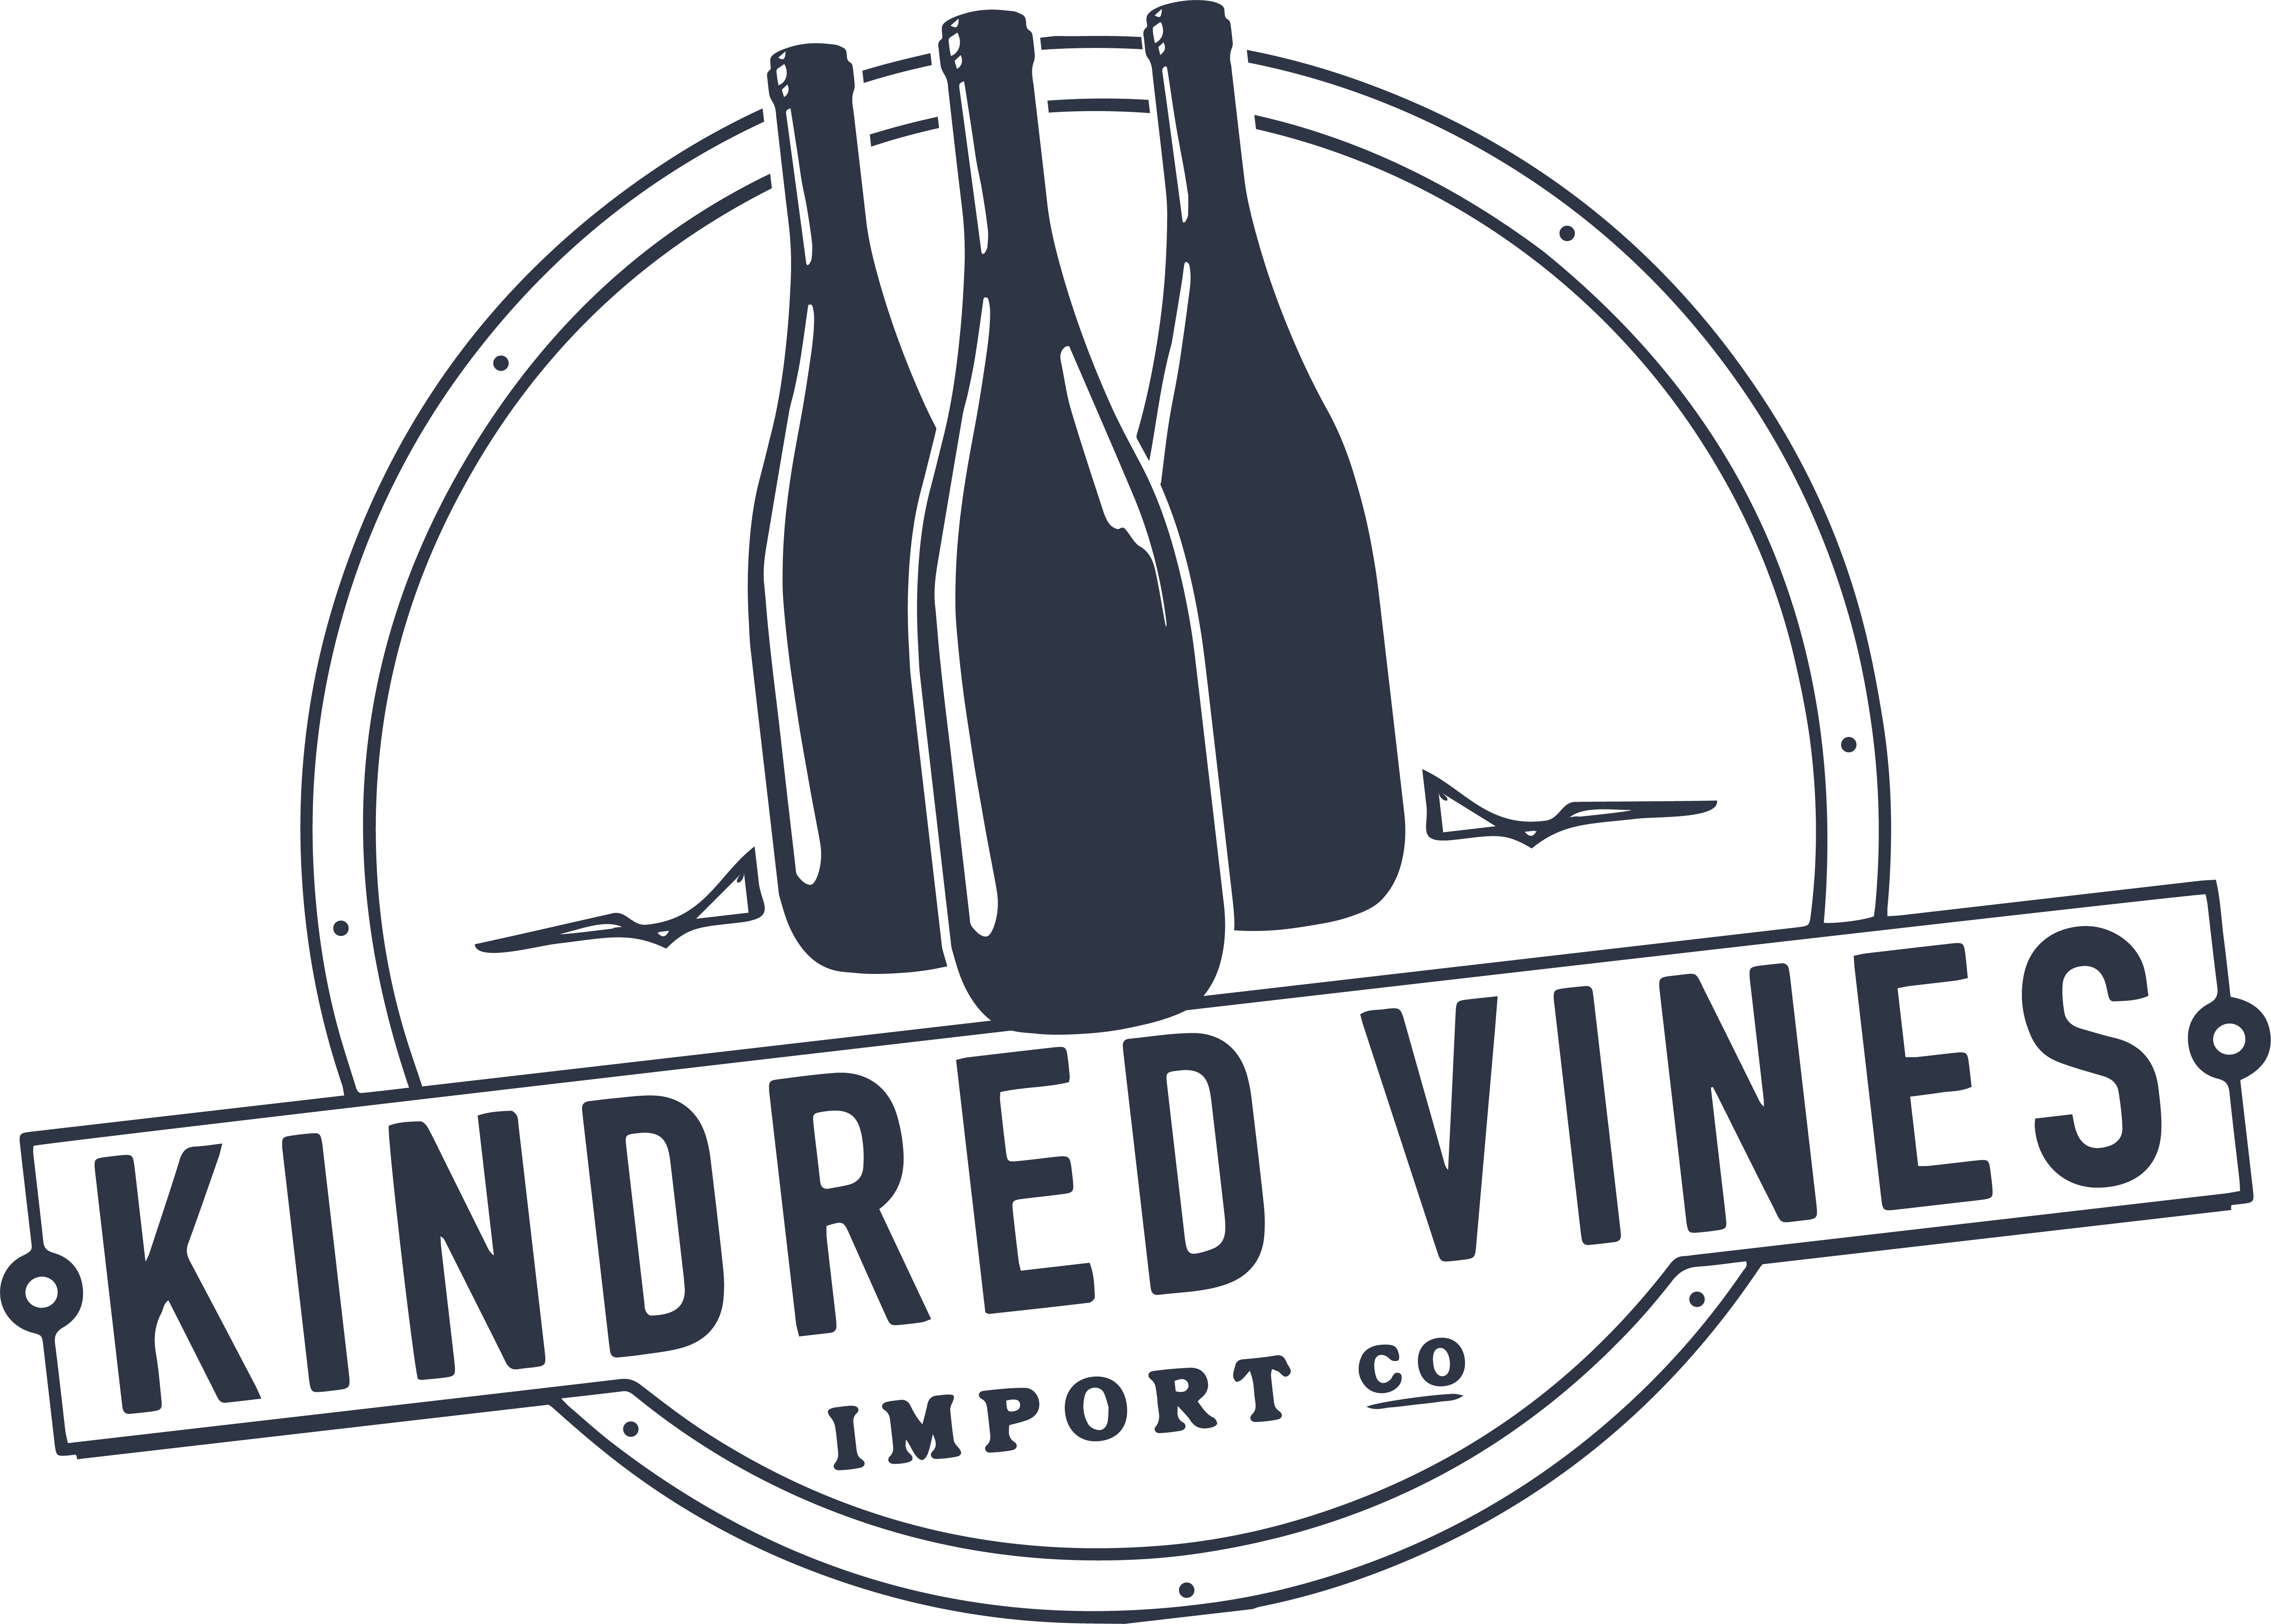 Kindred Vines